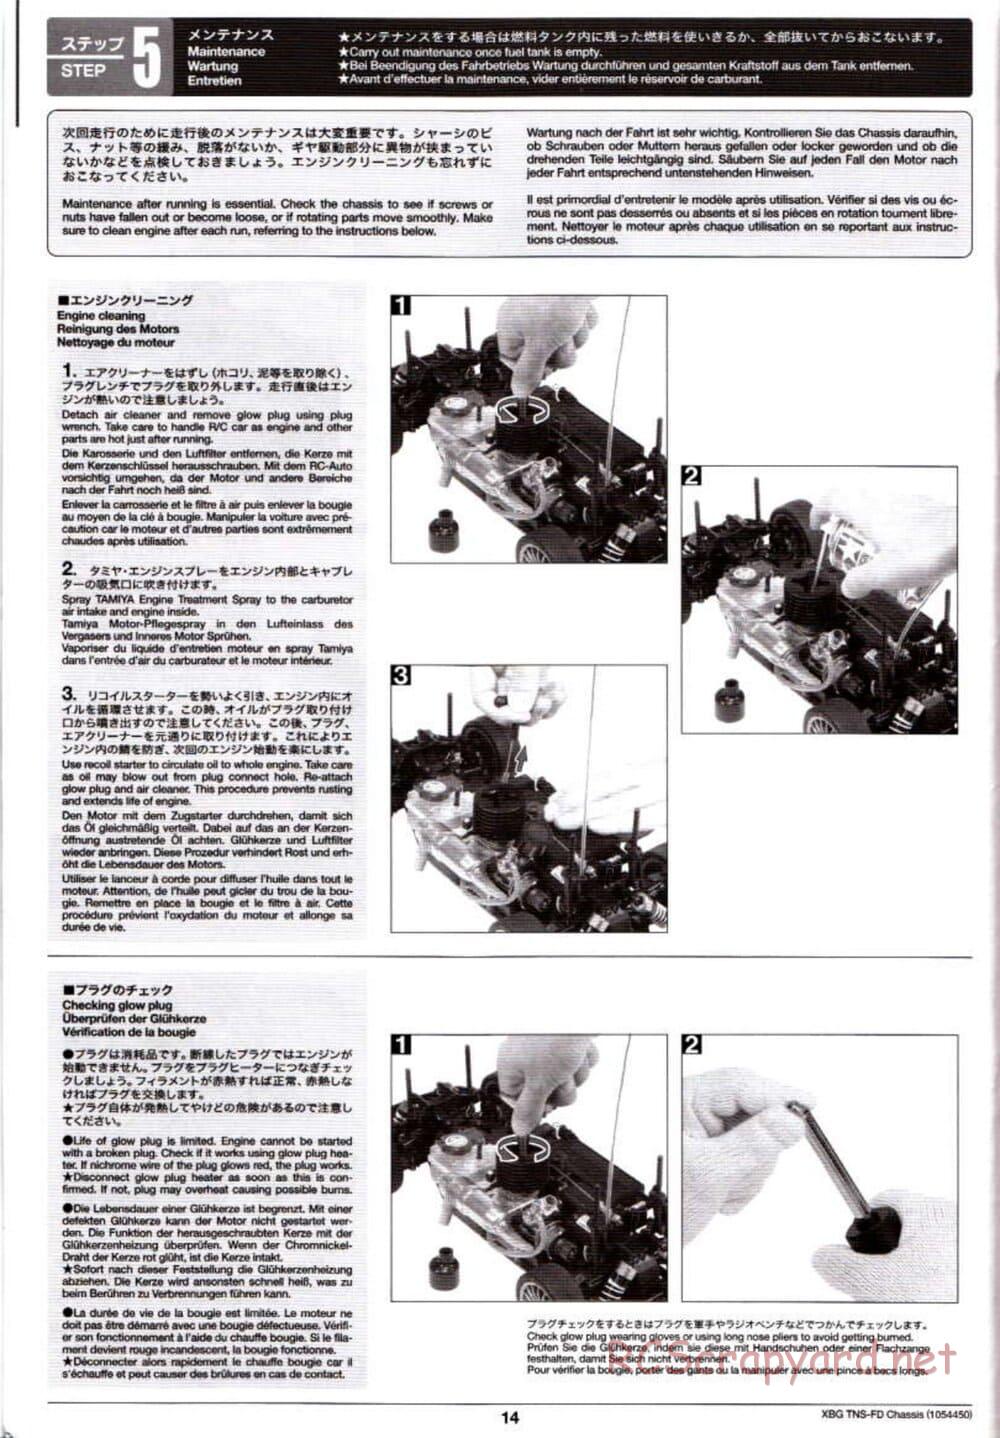 Tamiya - TNS-FD Chassis - Manual - Page 14